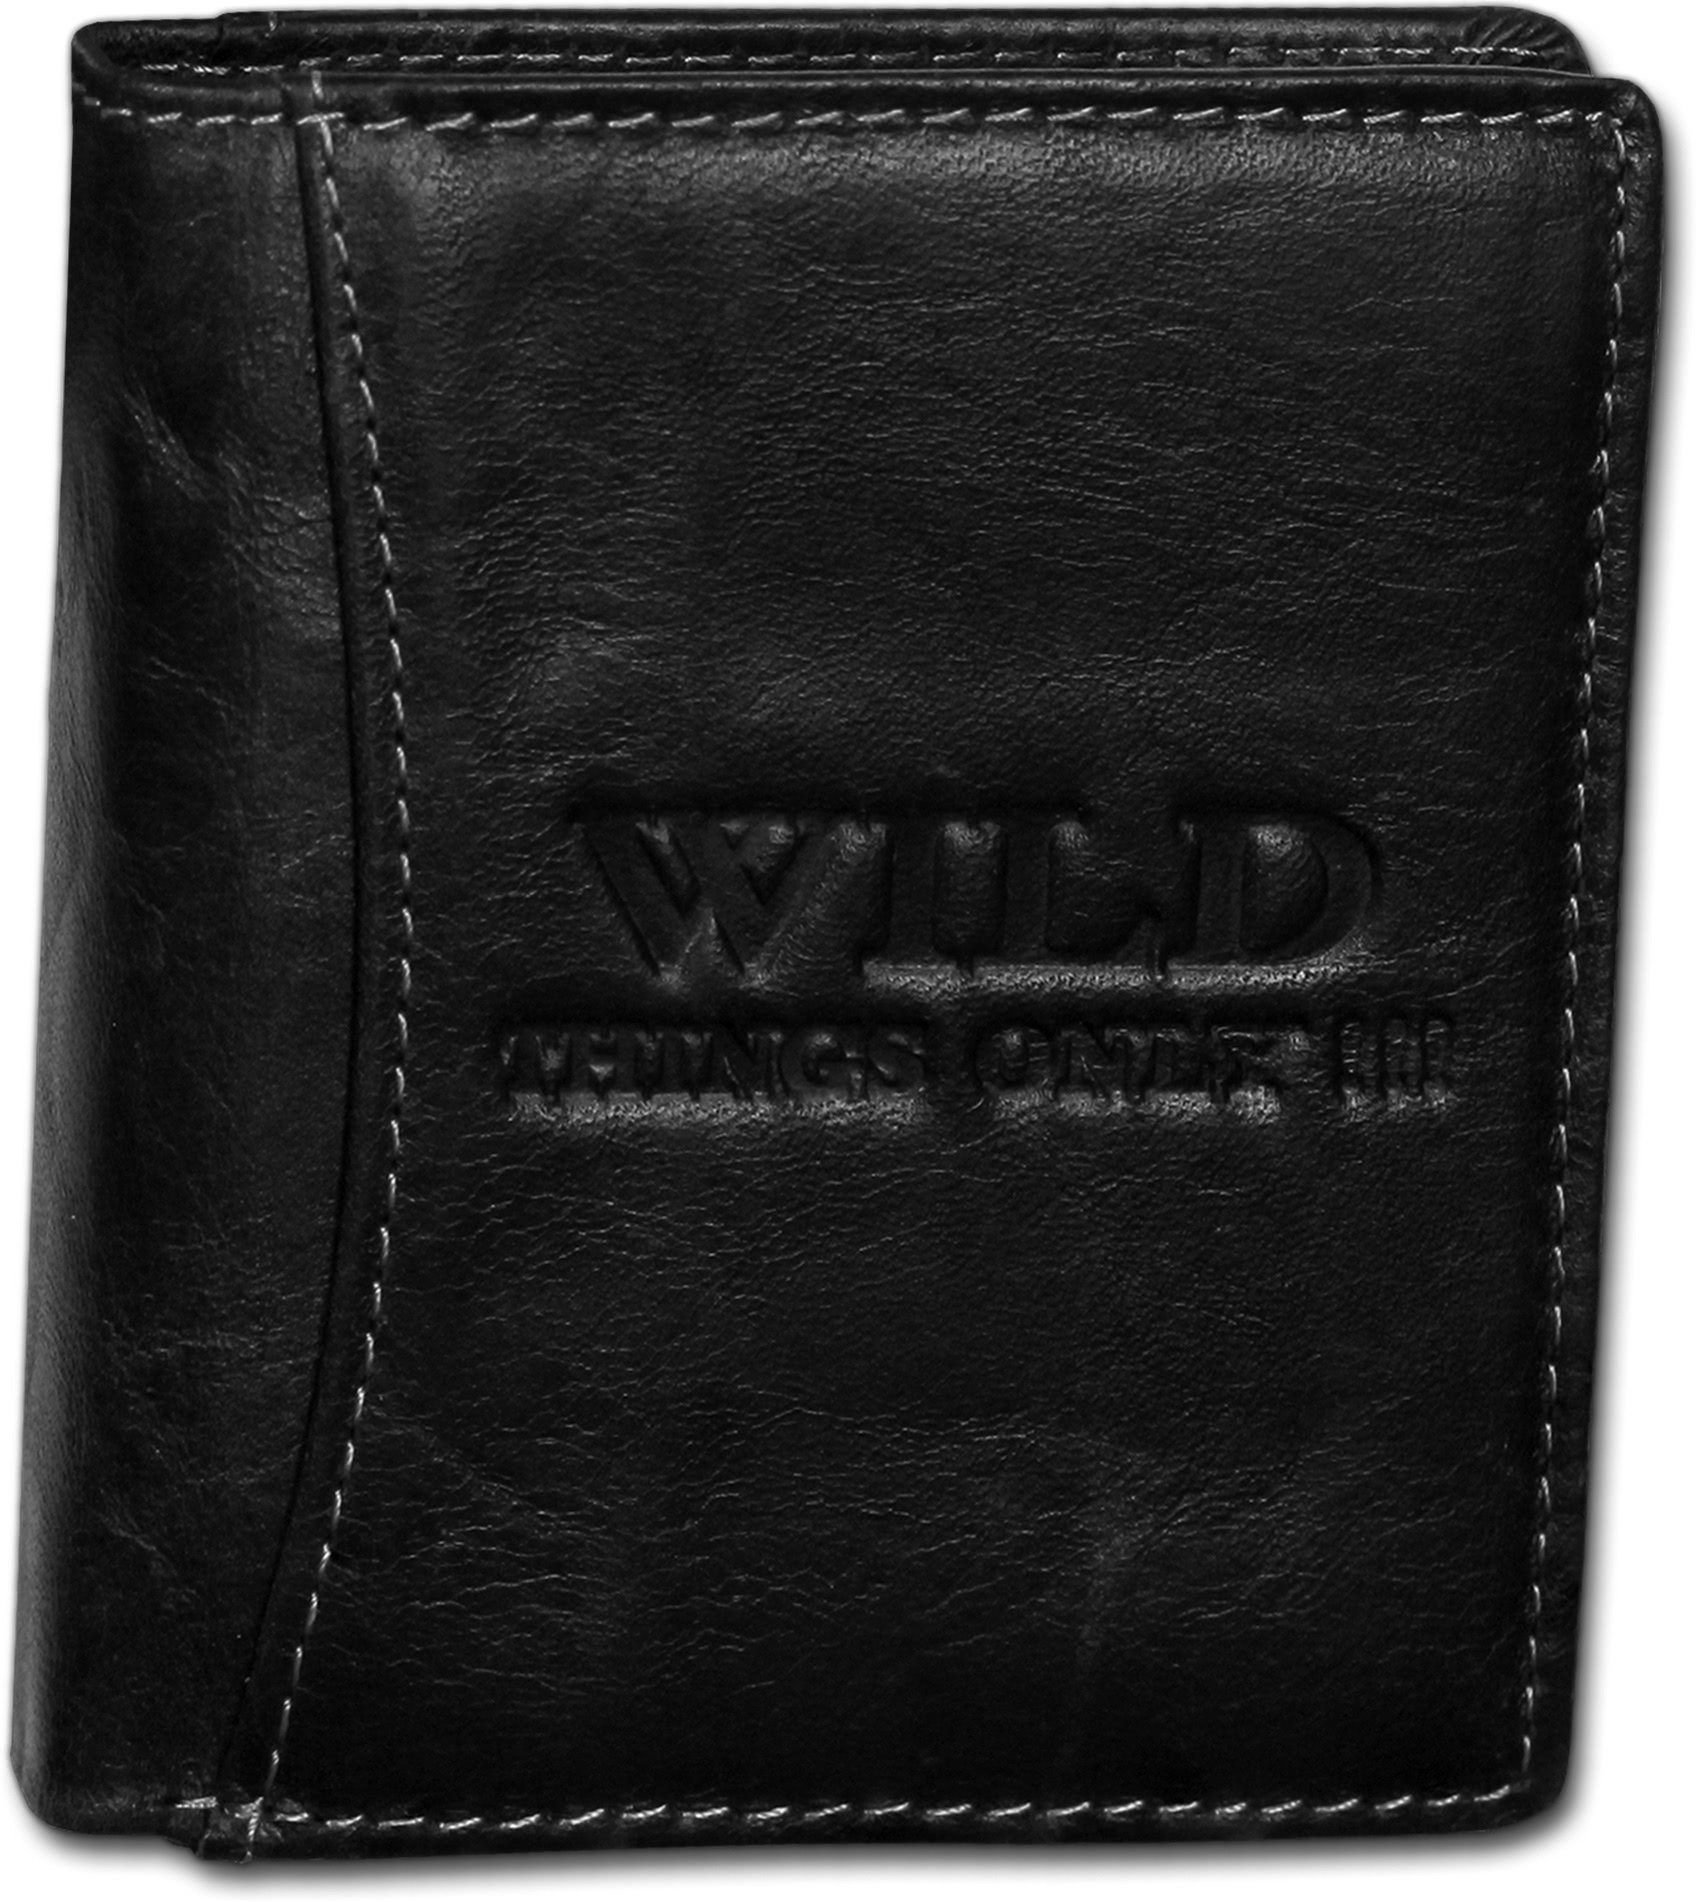 Wild Things Only !!! Geldbörse Wild Things Only RFID Block Echtleder (Portemonnaie, Portemonnaie), Portemonnaie aus Echtleder schwarz, Größe ca. 9cm